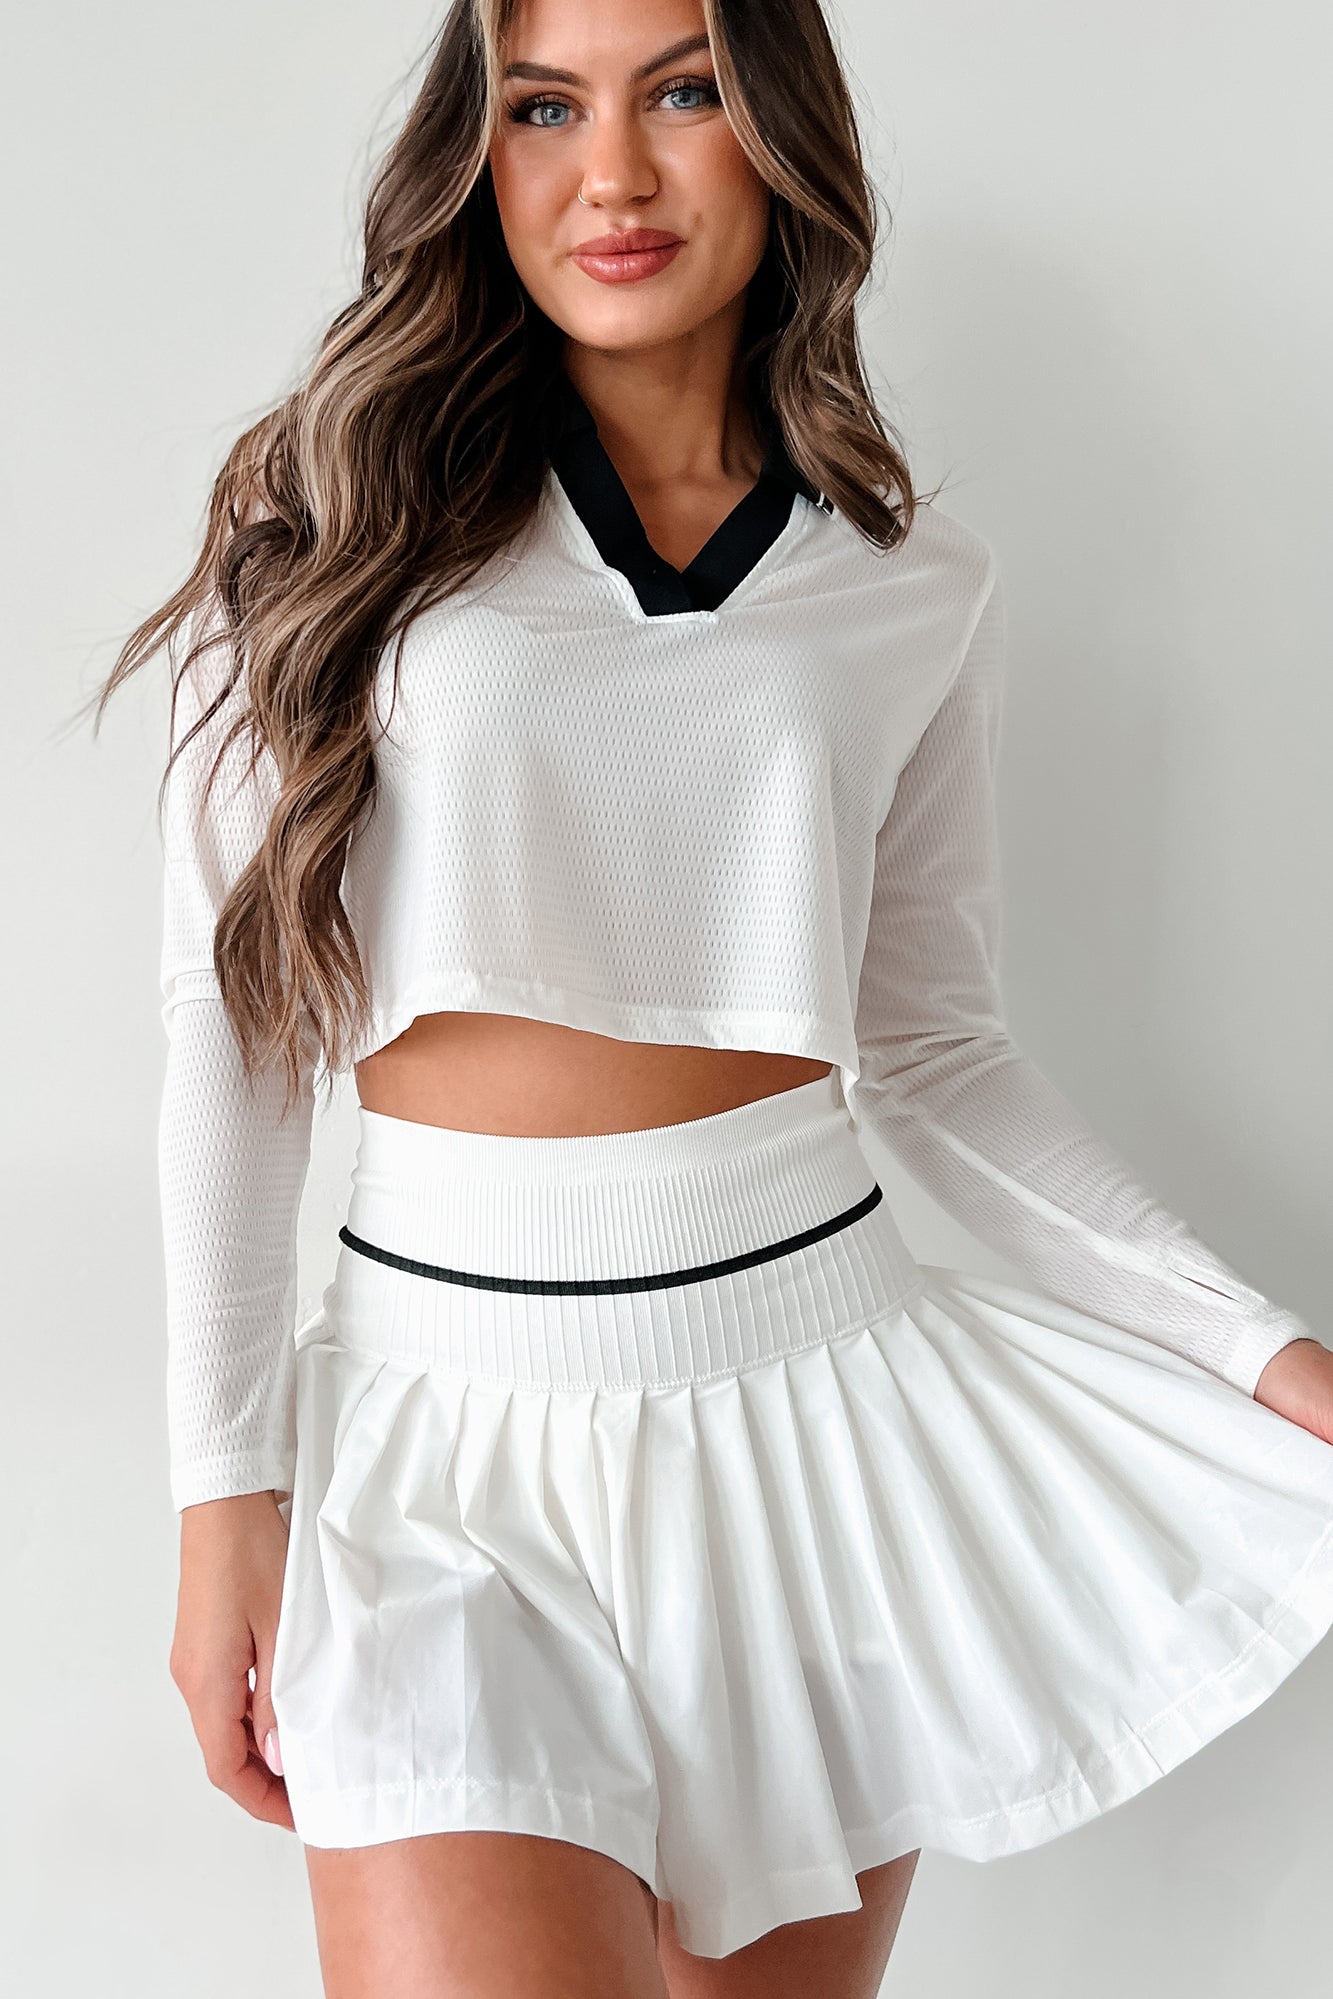 Scoring Points Retro Stripe Crop Top & Tennis Skirt Set (White/Black) - NanaMacs